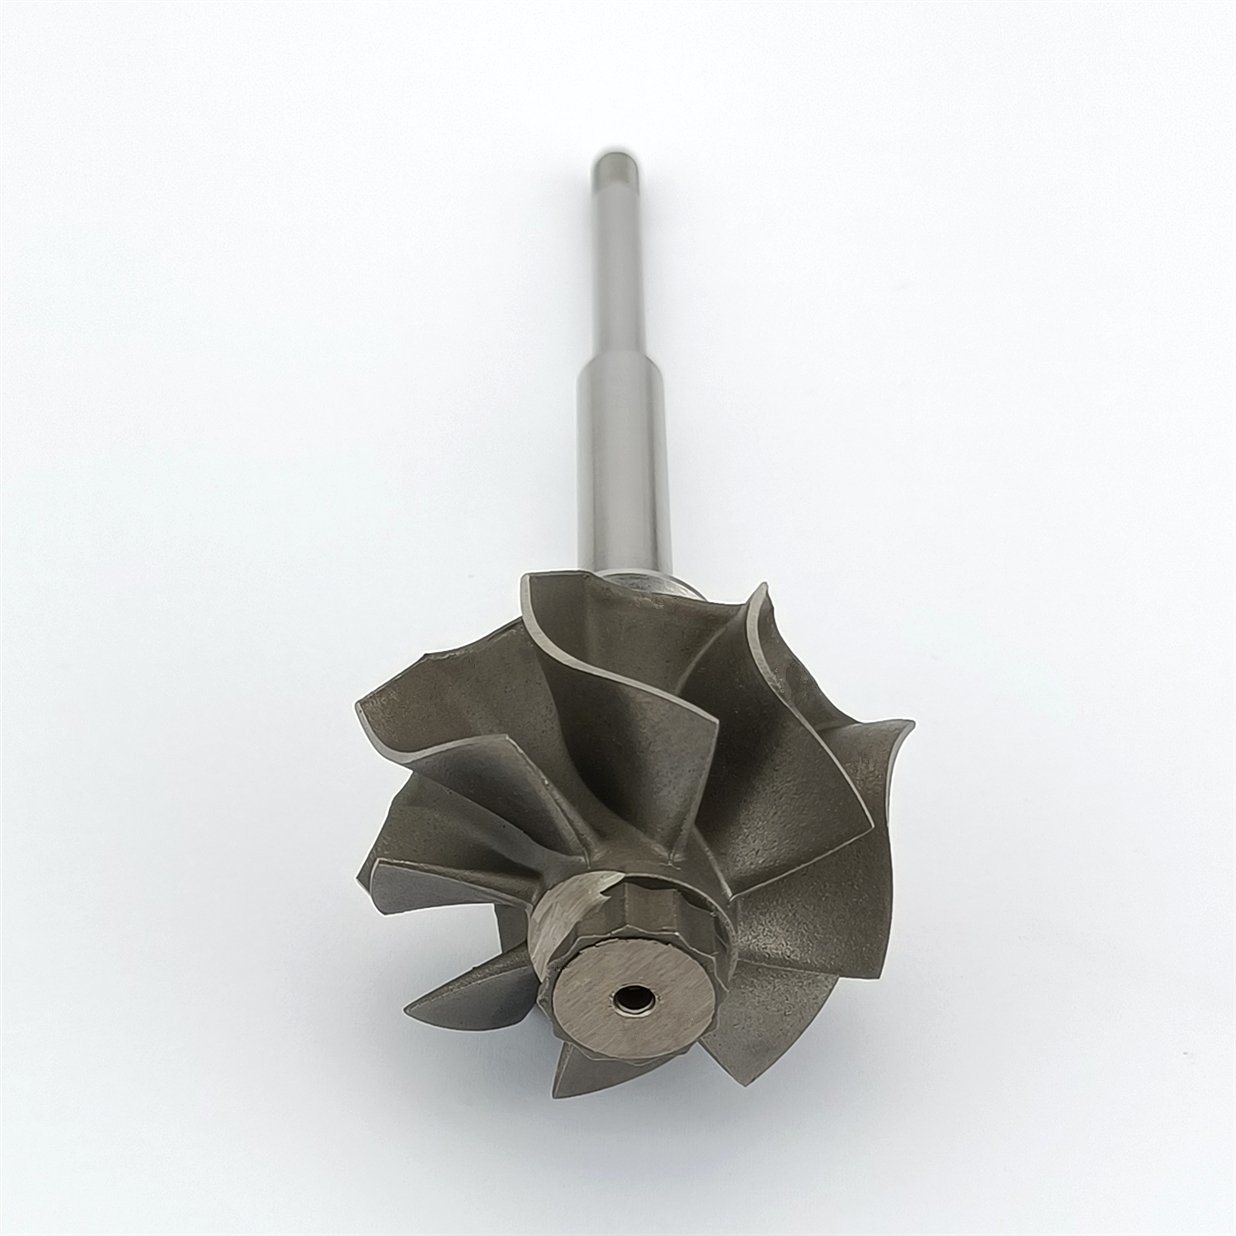 Turbo Turbine Wheel Shaft Rhf4/Rhf5 Ind 44.2mm Exd 37.685mm Blades8